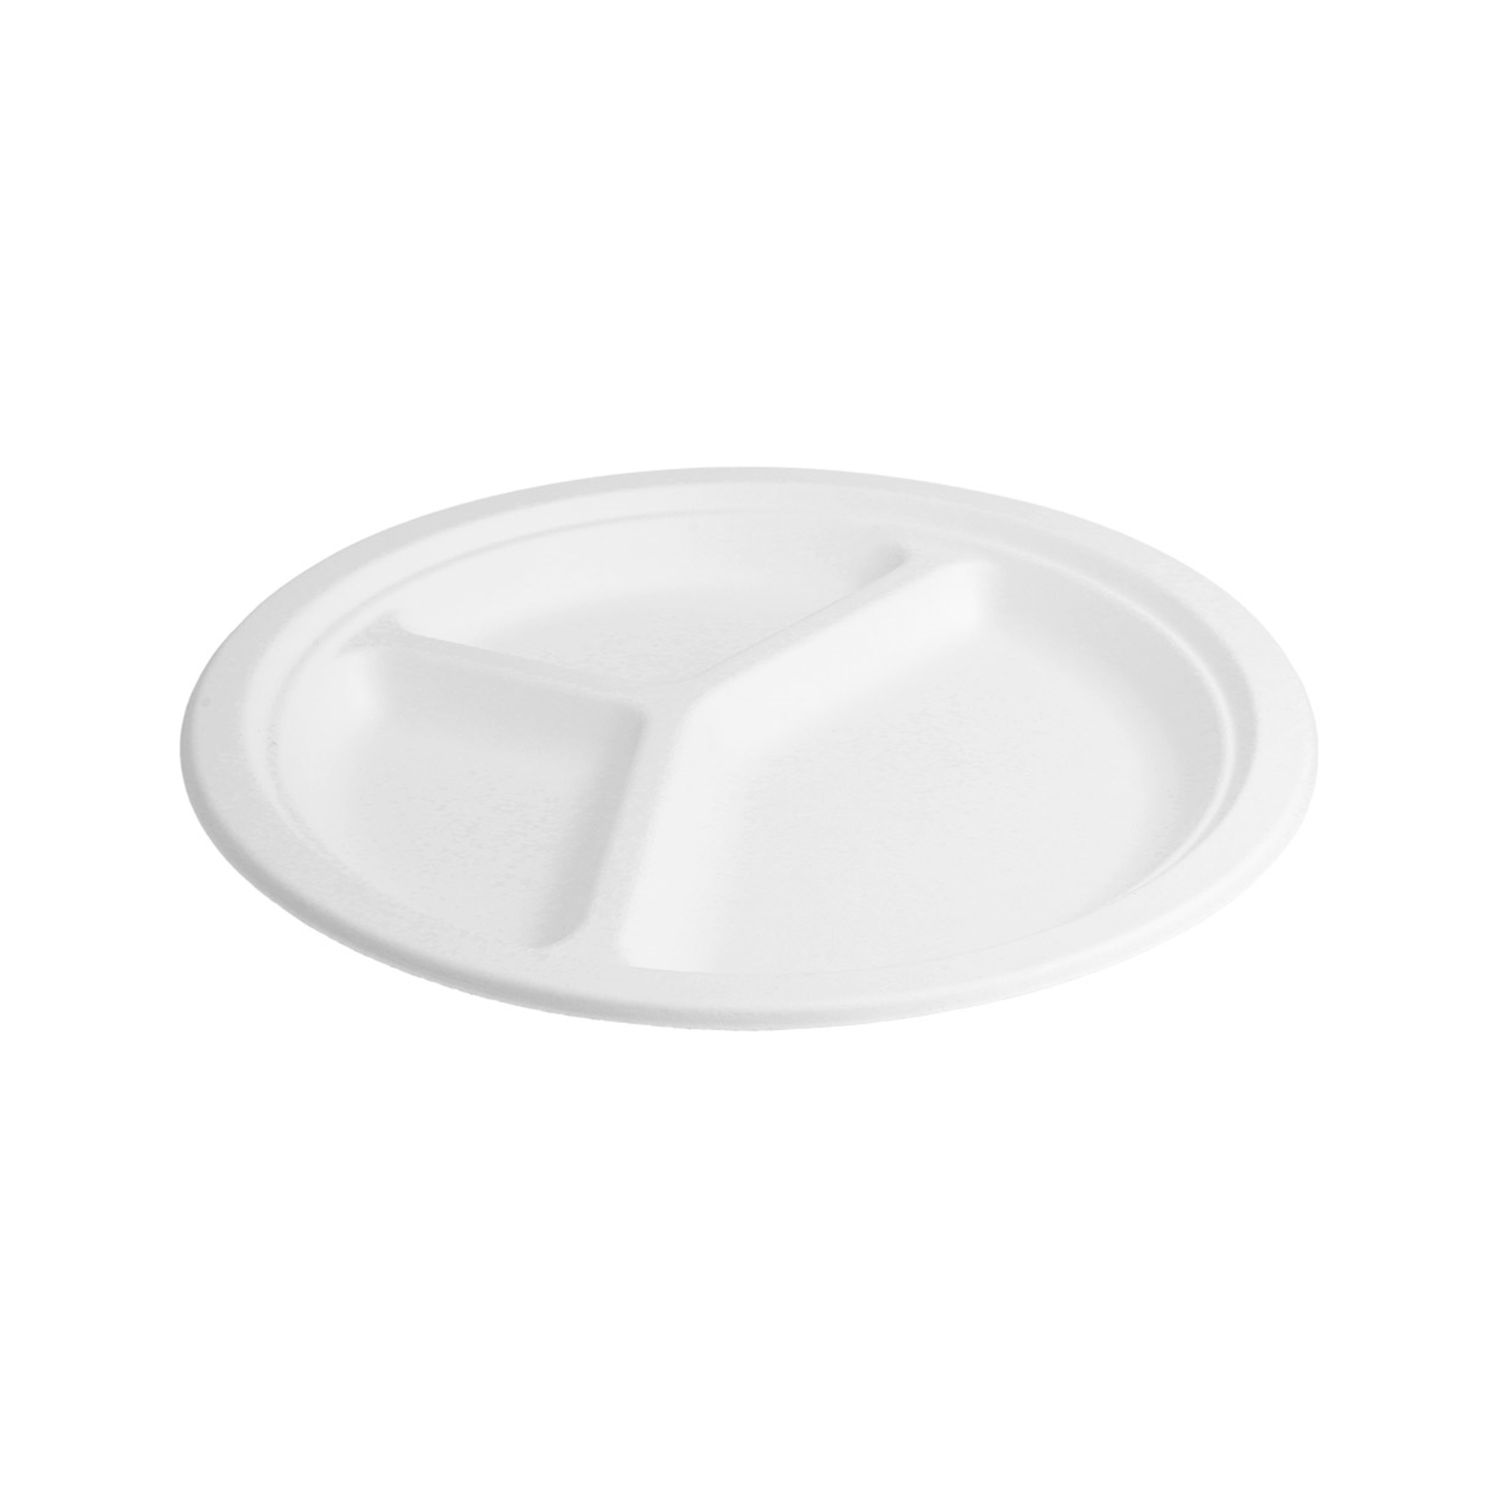 assiette-pulpe-blanche-3-compartiments-diam-26-cm-par-800-prosaveurs